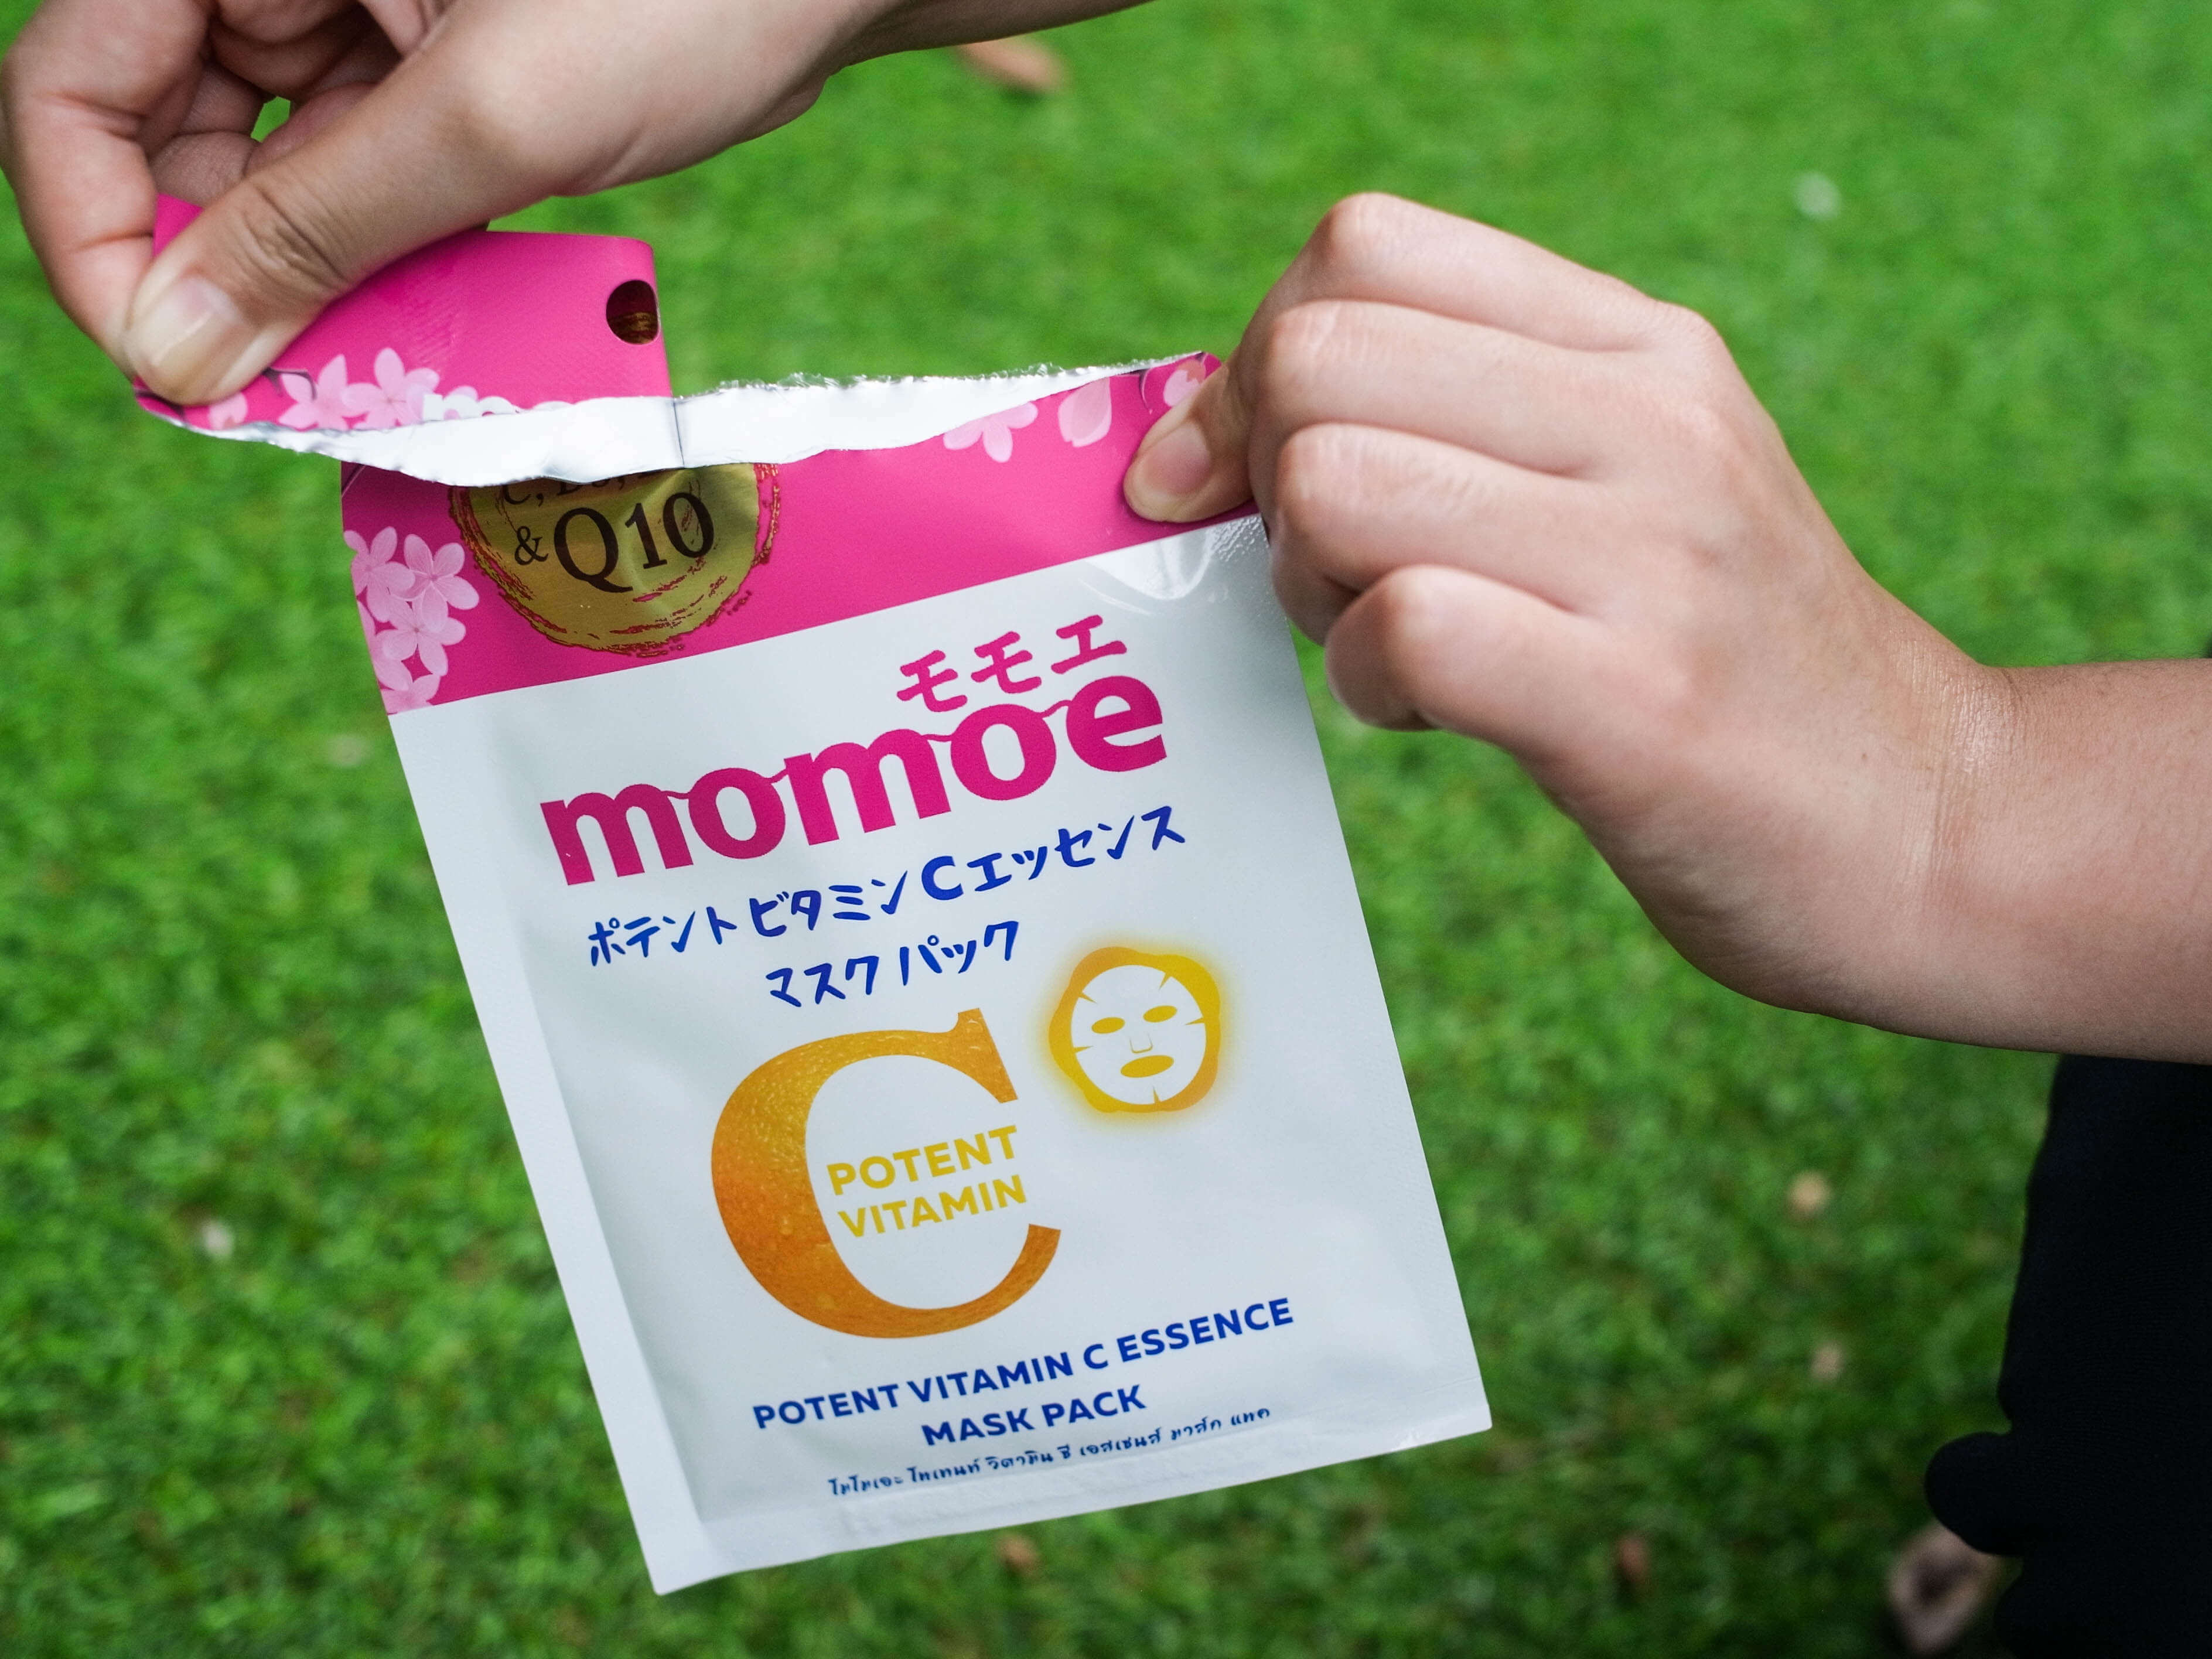 Momoe , Vitamin C Mask , Mask Vitamin C , Momoe Mask , Mask Momoe